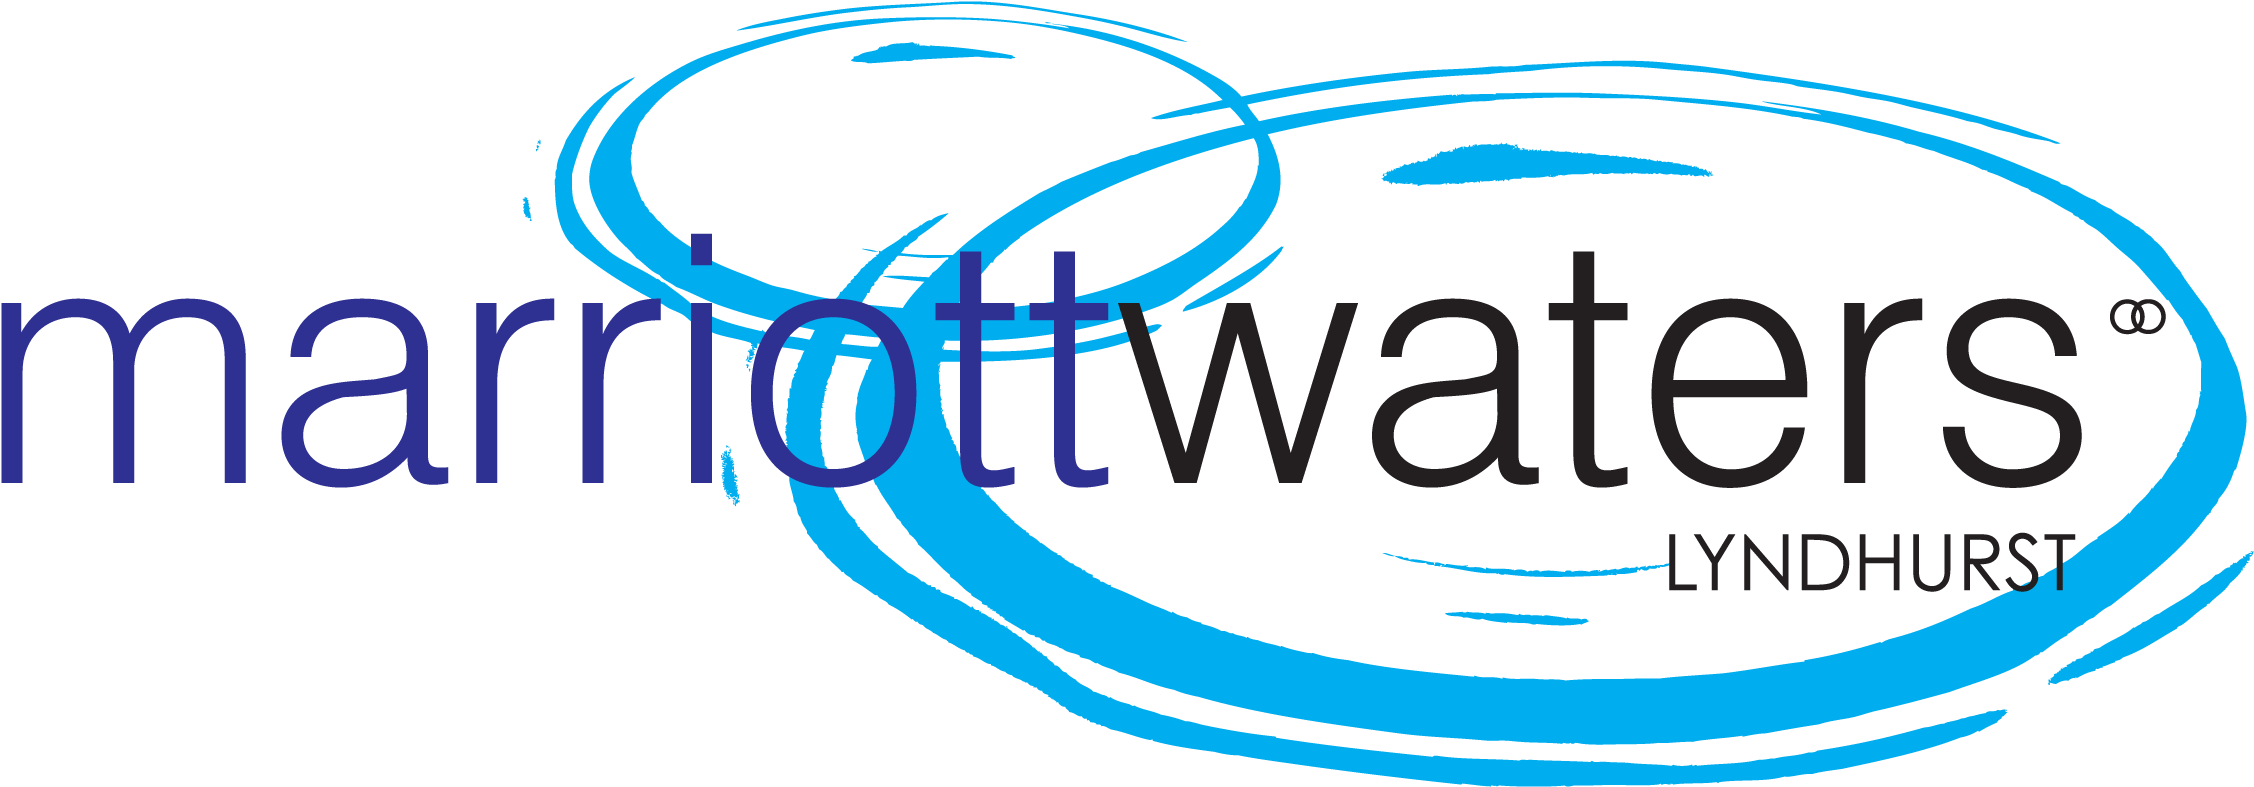 Marriott Waters - Marriott Waters Logo (2375x828), Png Download